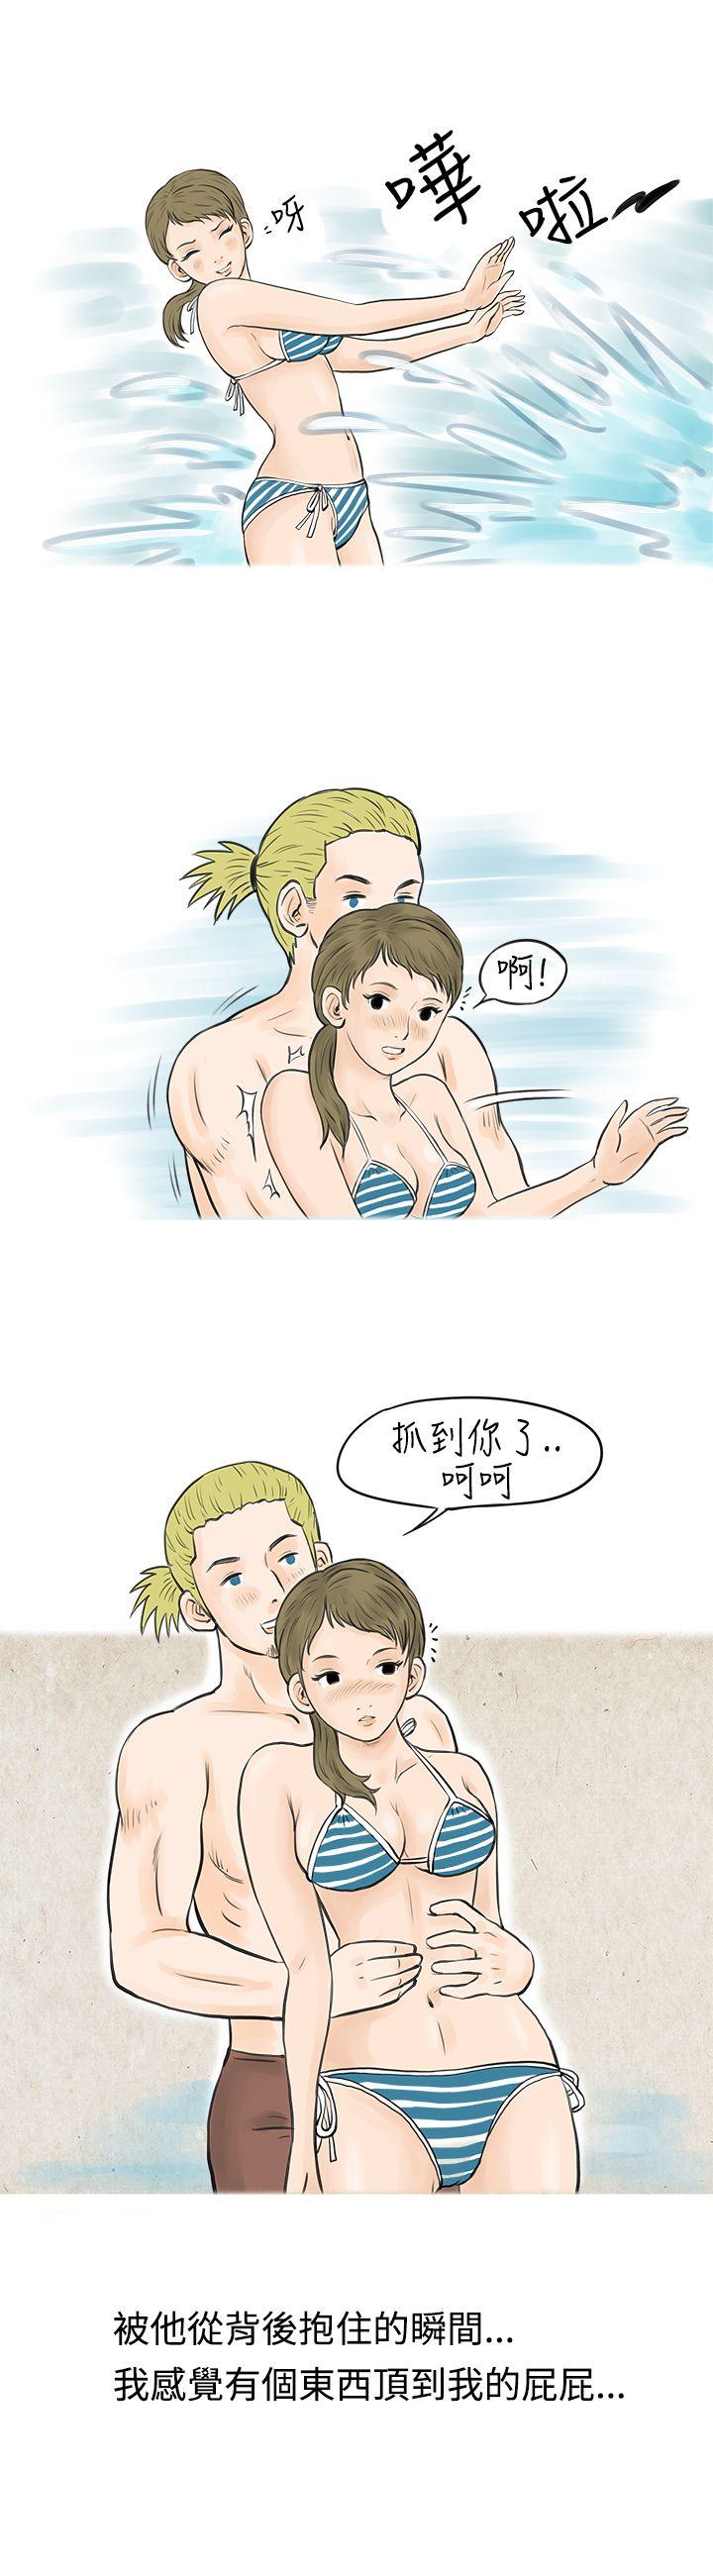 韩国污漫画 秘密Story 在梨泰院游泳池中的小故事(上) 12